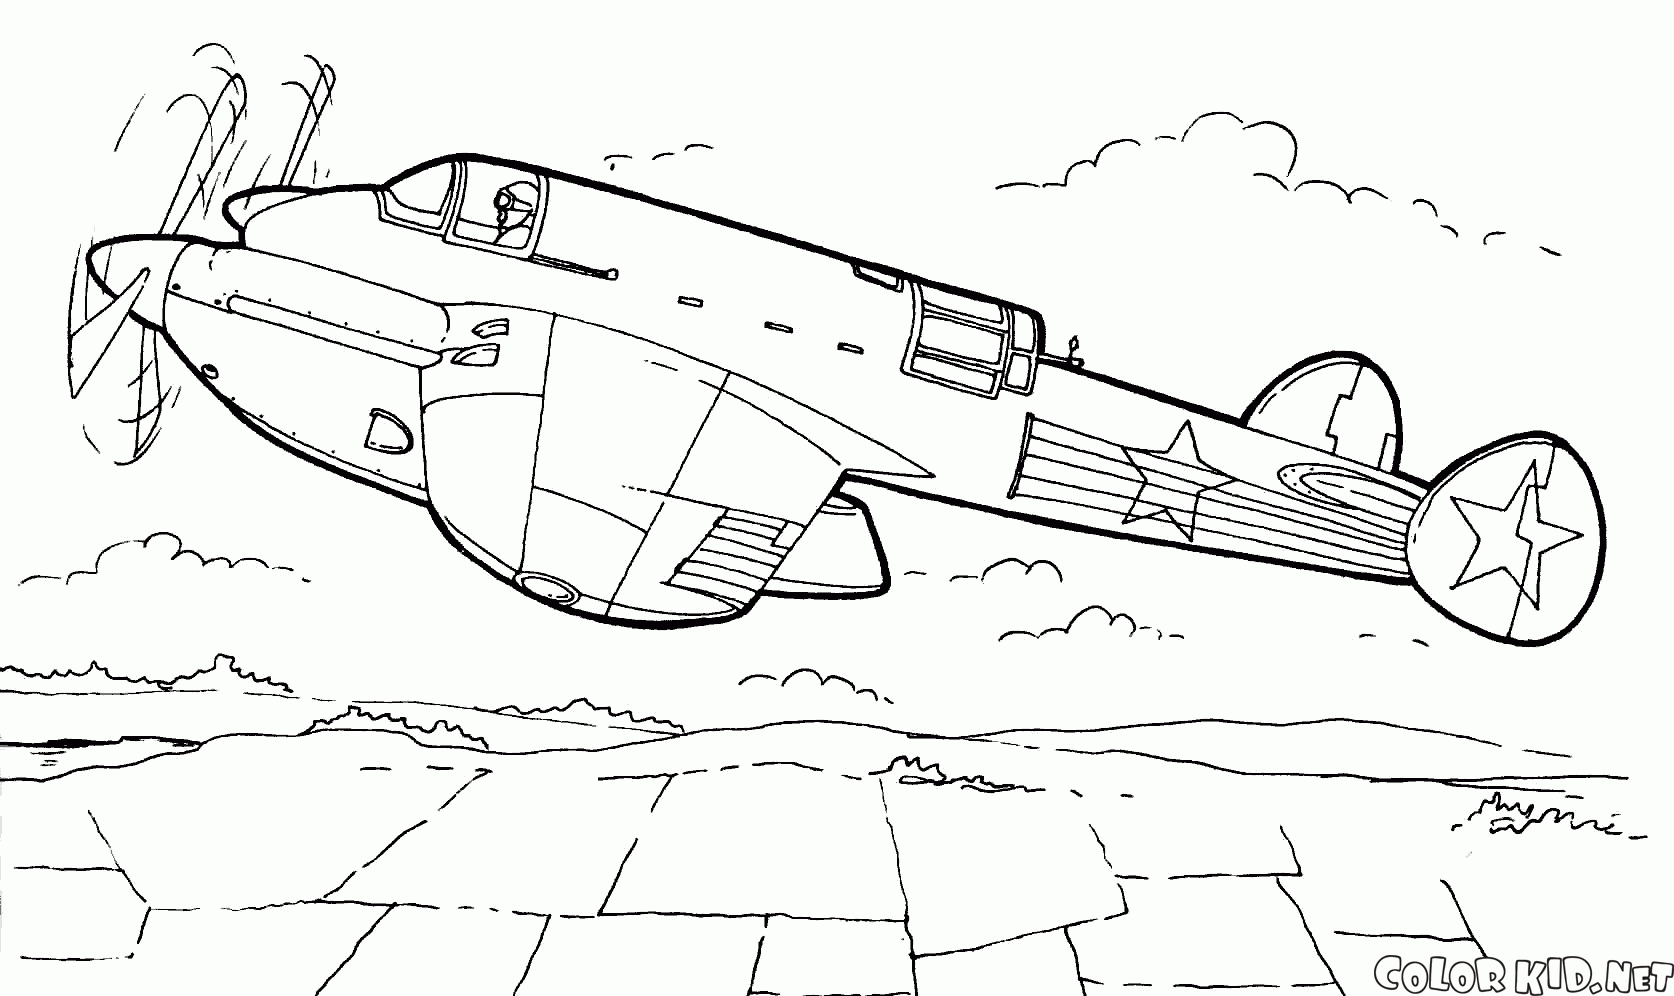 R-12 yüksek hızlı keşif uçağı